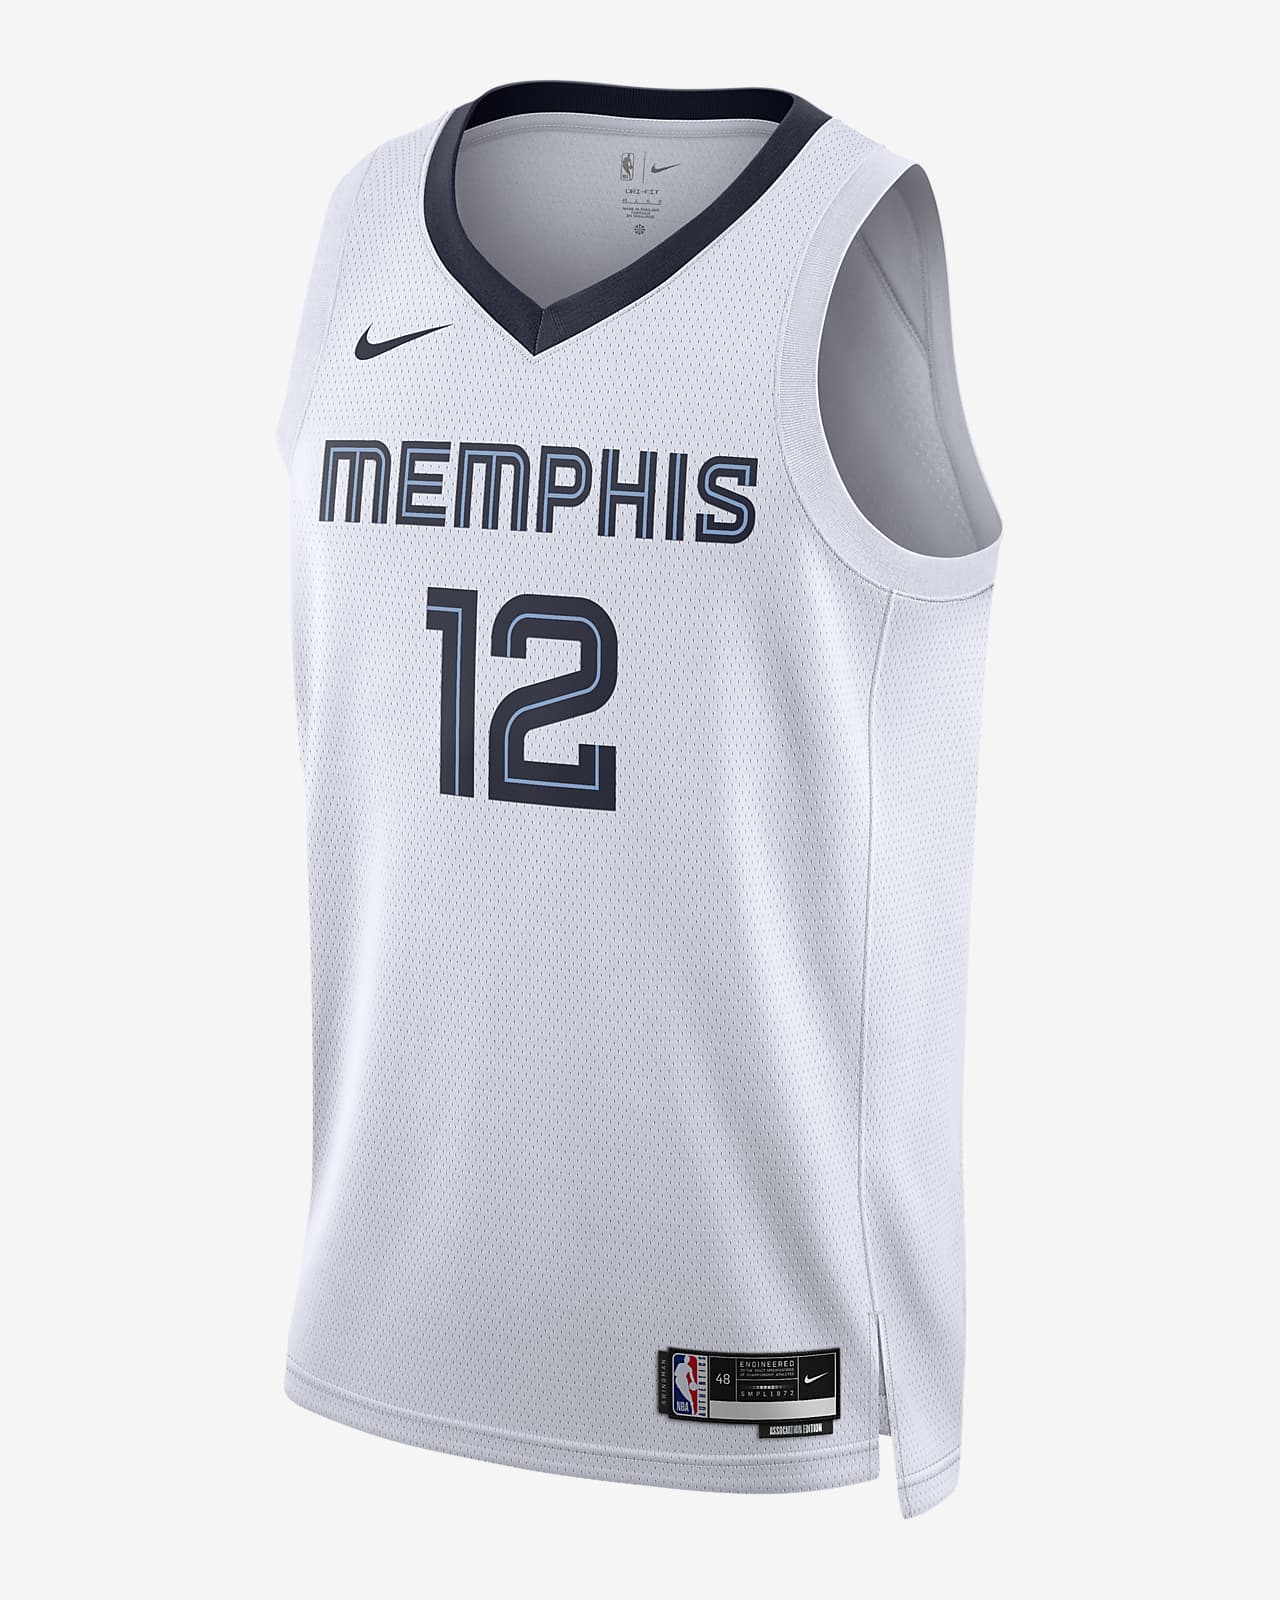 2022/23 赛季孟菲斯灰熊队 Association Edition Nike Dri-FIT NBA Swingman Jersey 男子速干球衣